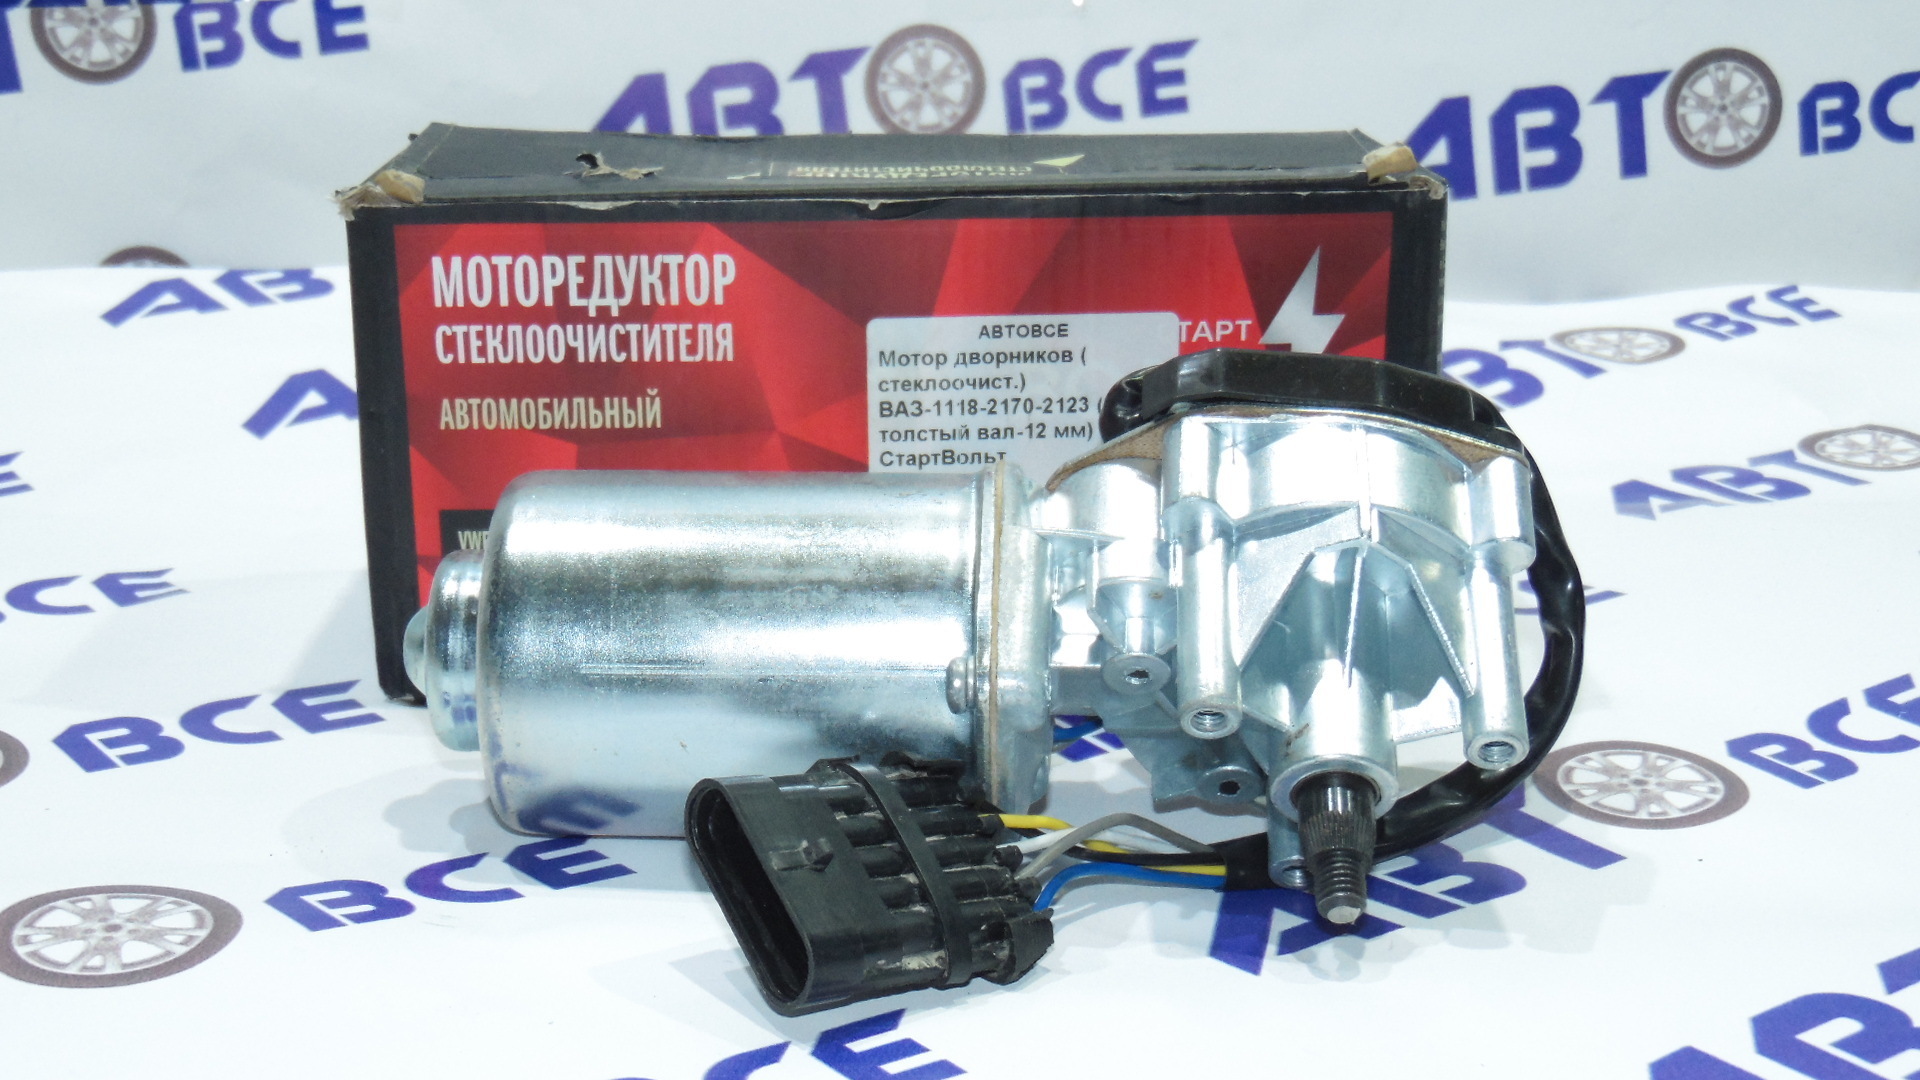 Мотор дворников ( стеклоочистителя) ВАЗ-1118-2190-2170-2123 (толстый вал-12 мм) СтартВольт